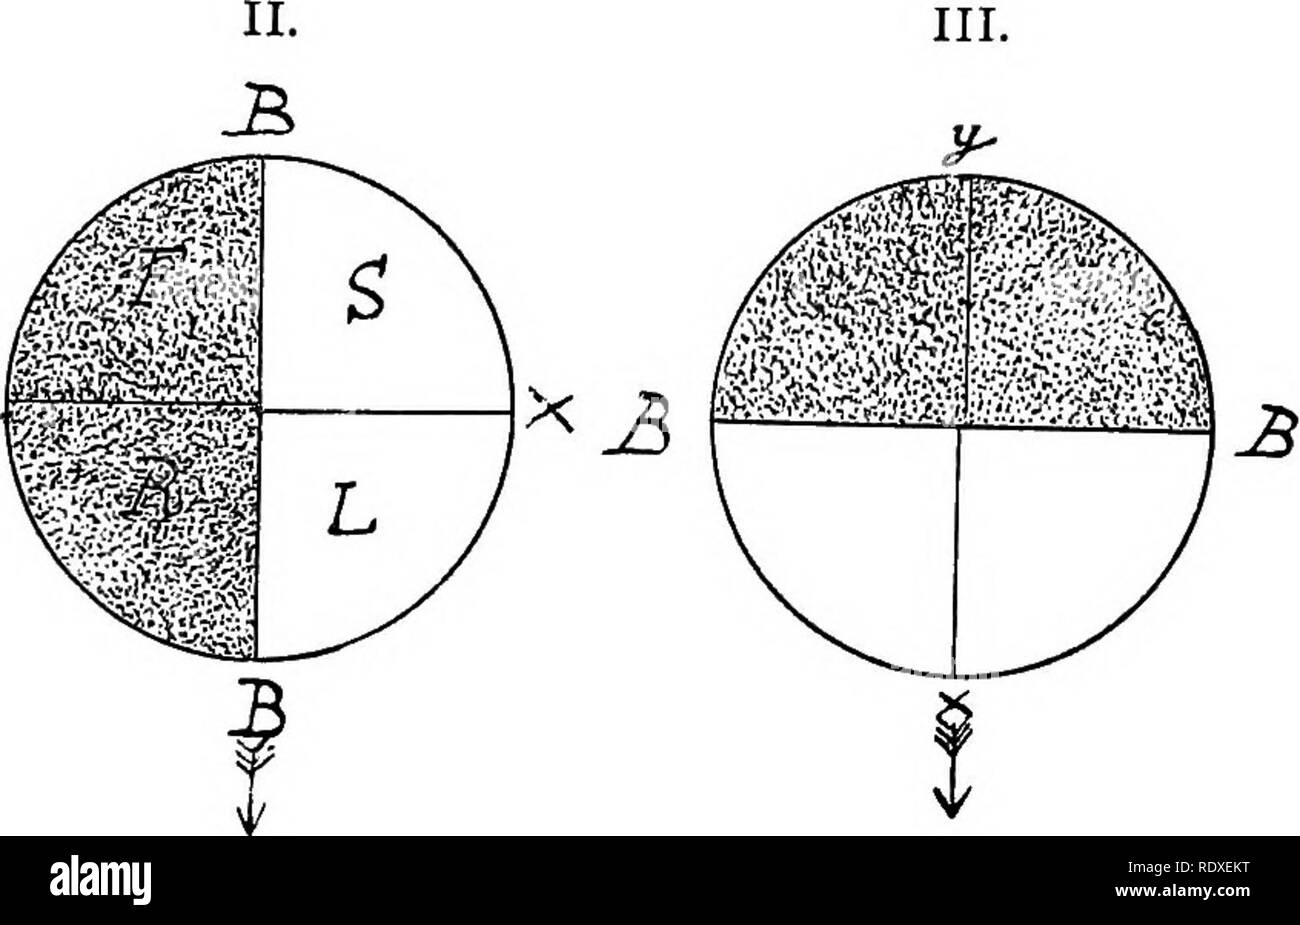 . L' origine di una terra flora, una teoria basata su fatti di alternanza. Morfologia delle piante. Fig. 356. Diagrammi per mostrare la relazione di la parete basale, B, B, e hypobasal (tratteggiata) e epibasal (clear) emisferi al collo archegonial, che è indicata da una freccia ; x,y indica la polarità, essendo x l'apice; .S"=stelo; X. = foglie;  /?=root; /"=piede. I. mostra l'orientamento visto in Marattiaceous felci. II. che per Leptosporangiate Ferns. III. che per l'equiseto e Ophioglossaceae. ha avuto luogo e non da una qualsiasi rotazione dell'embrione, ma dal cambiamento nel modo in cui lo zigote ha Foto Stock